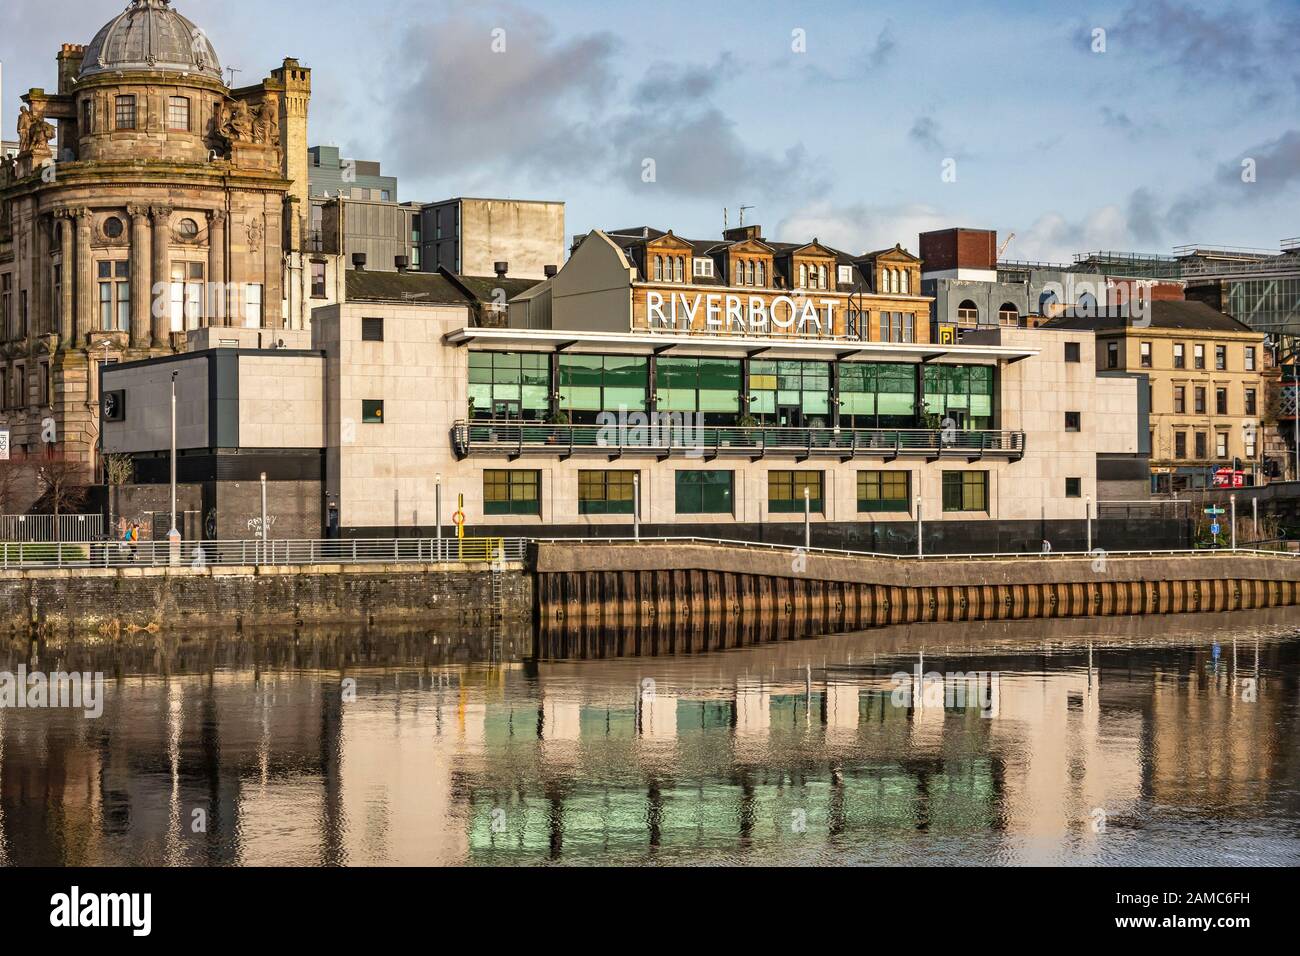 Grosvenor Casino Riverboat, Glasgow sur la rivière Clyde à Broomielaw Glasgow Ecosse Royaume-Uni Banque D'Images